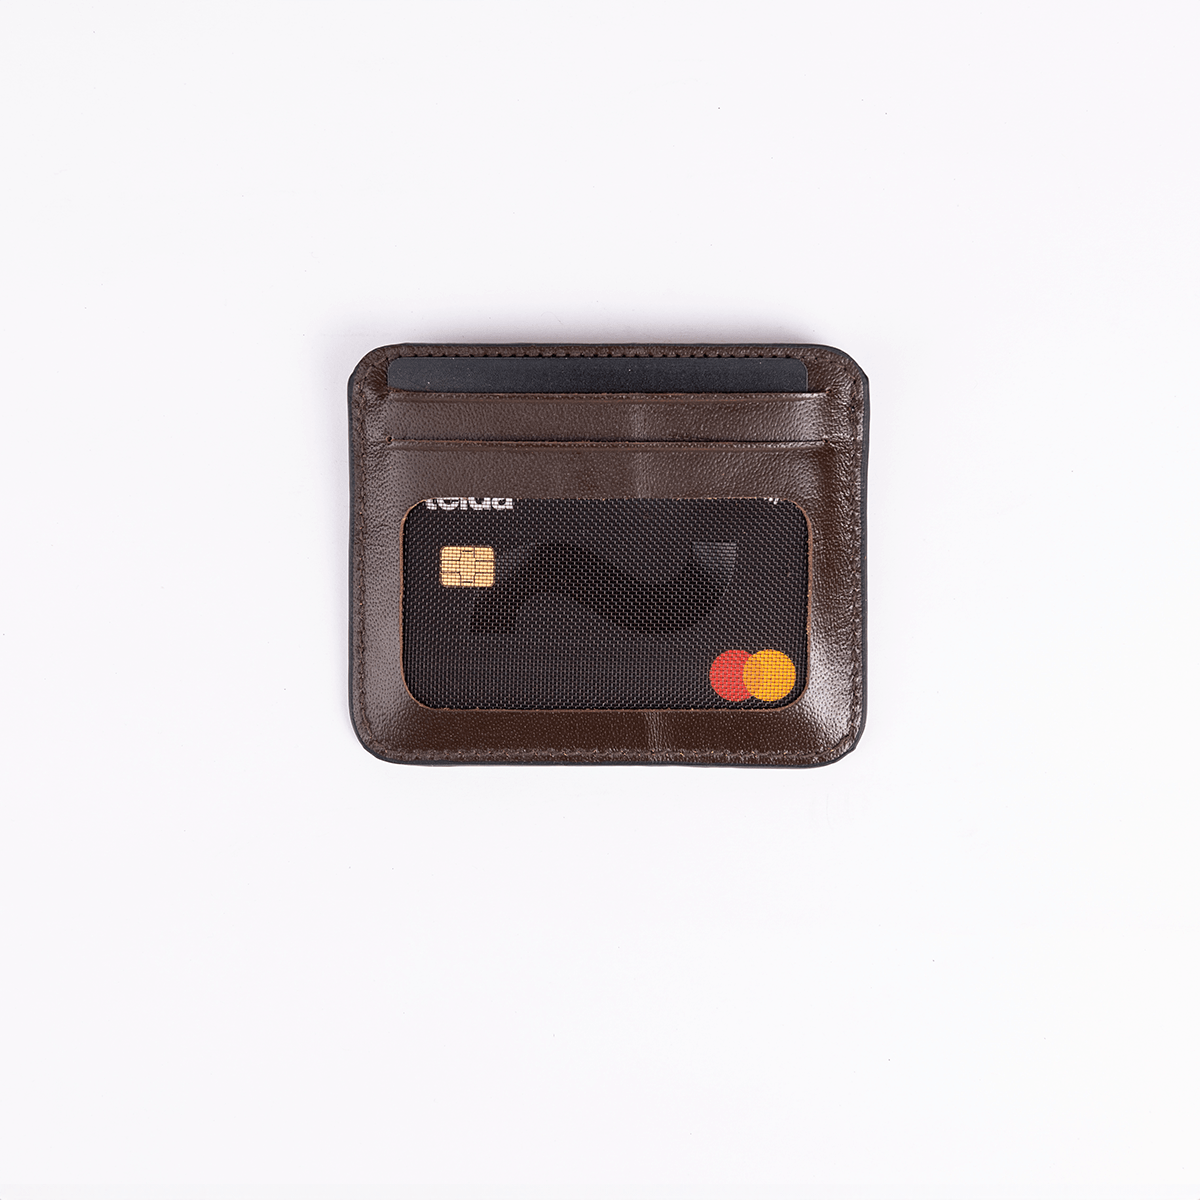 Leather Card Holder - Dark Brown - Hatchill